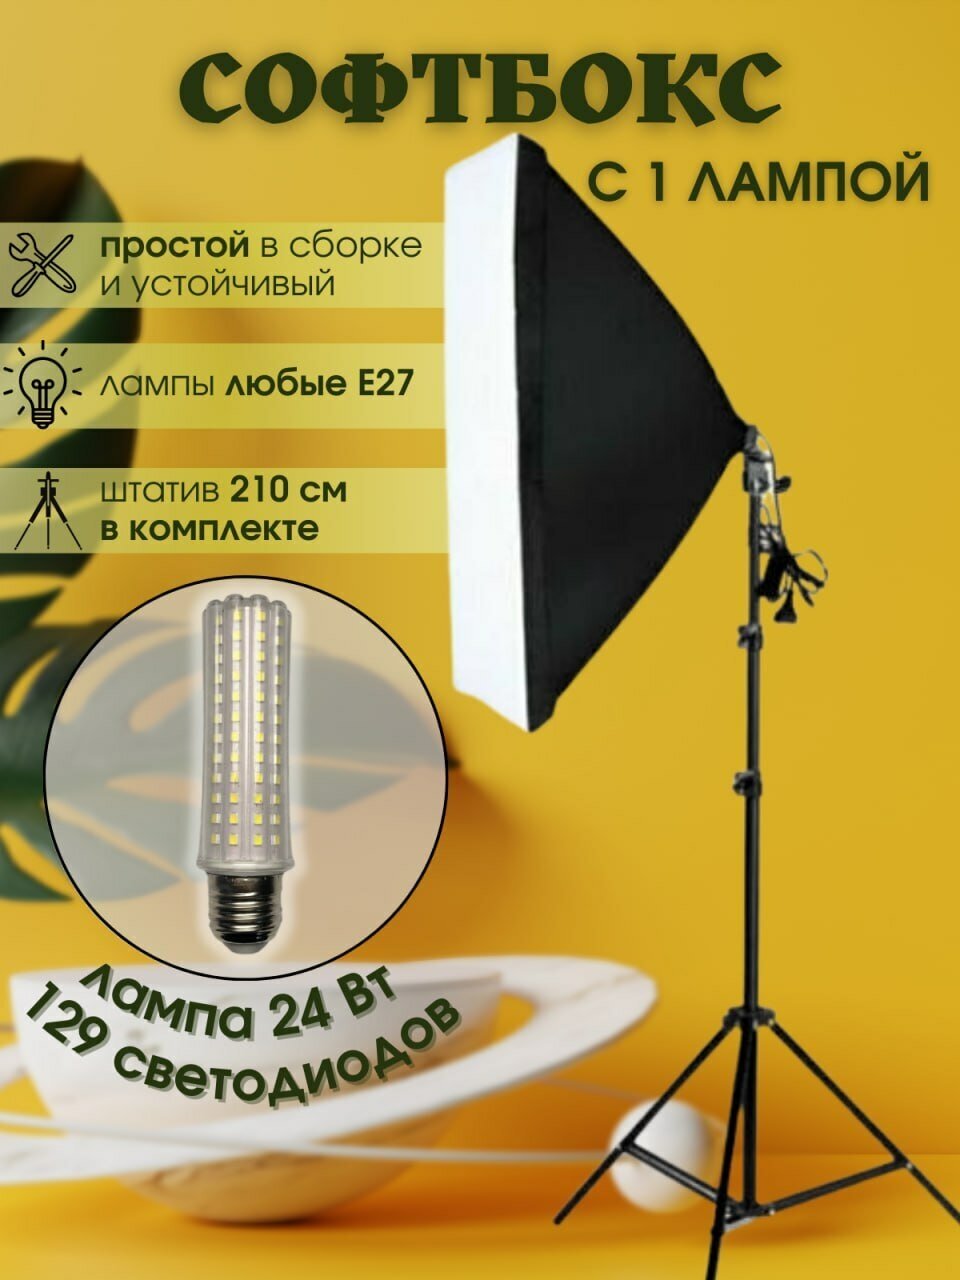 Видеосвет Софтбокс с лампой 24 вт и штативом — купить в интернет-магазине по низкой цене на Яндекс Маркете